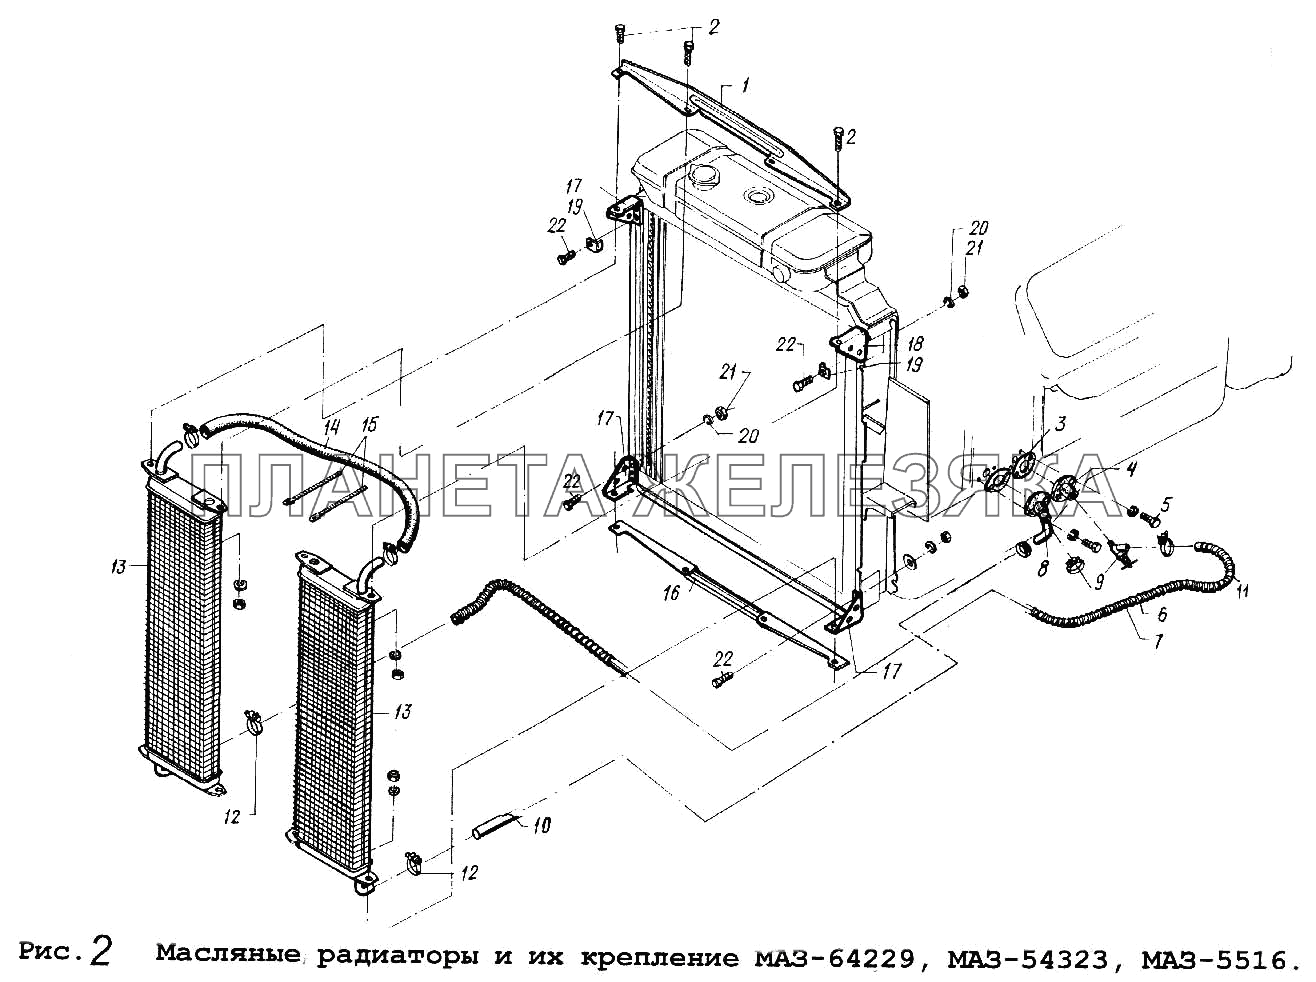 Масляные радиаторы и их крепление МАЗ-64229, МАЗ-54323,МАЗ-5516 Общий (см. мод-ции)